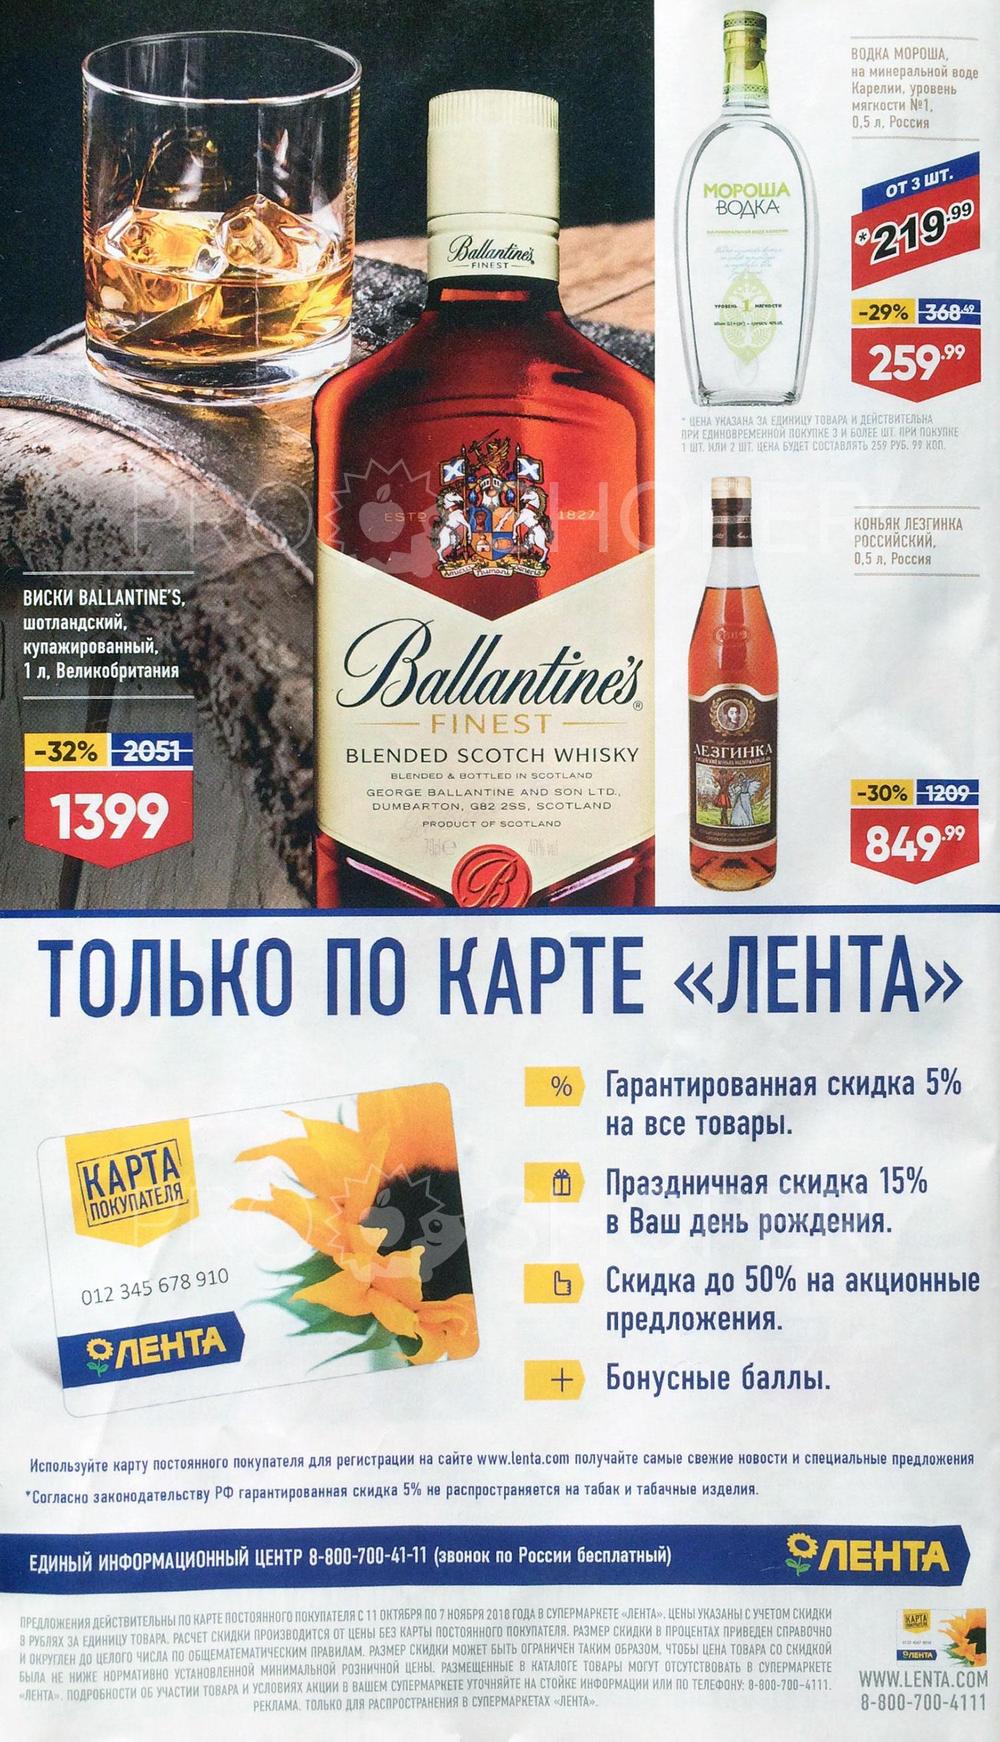 Магазин Метро Каталог Алкогольной